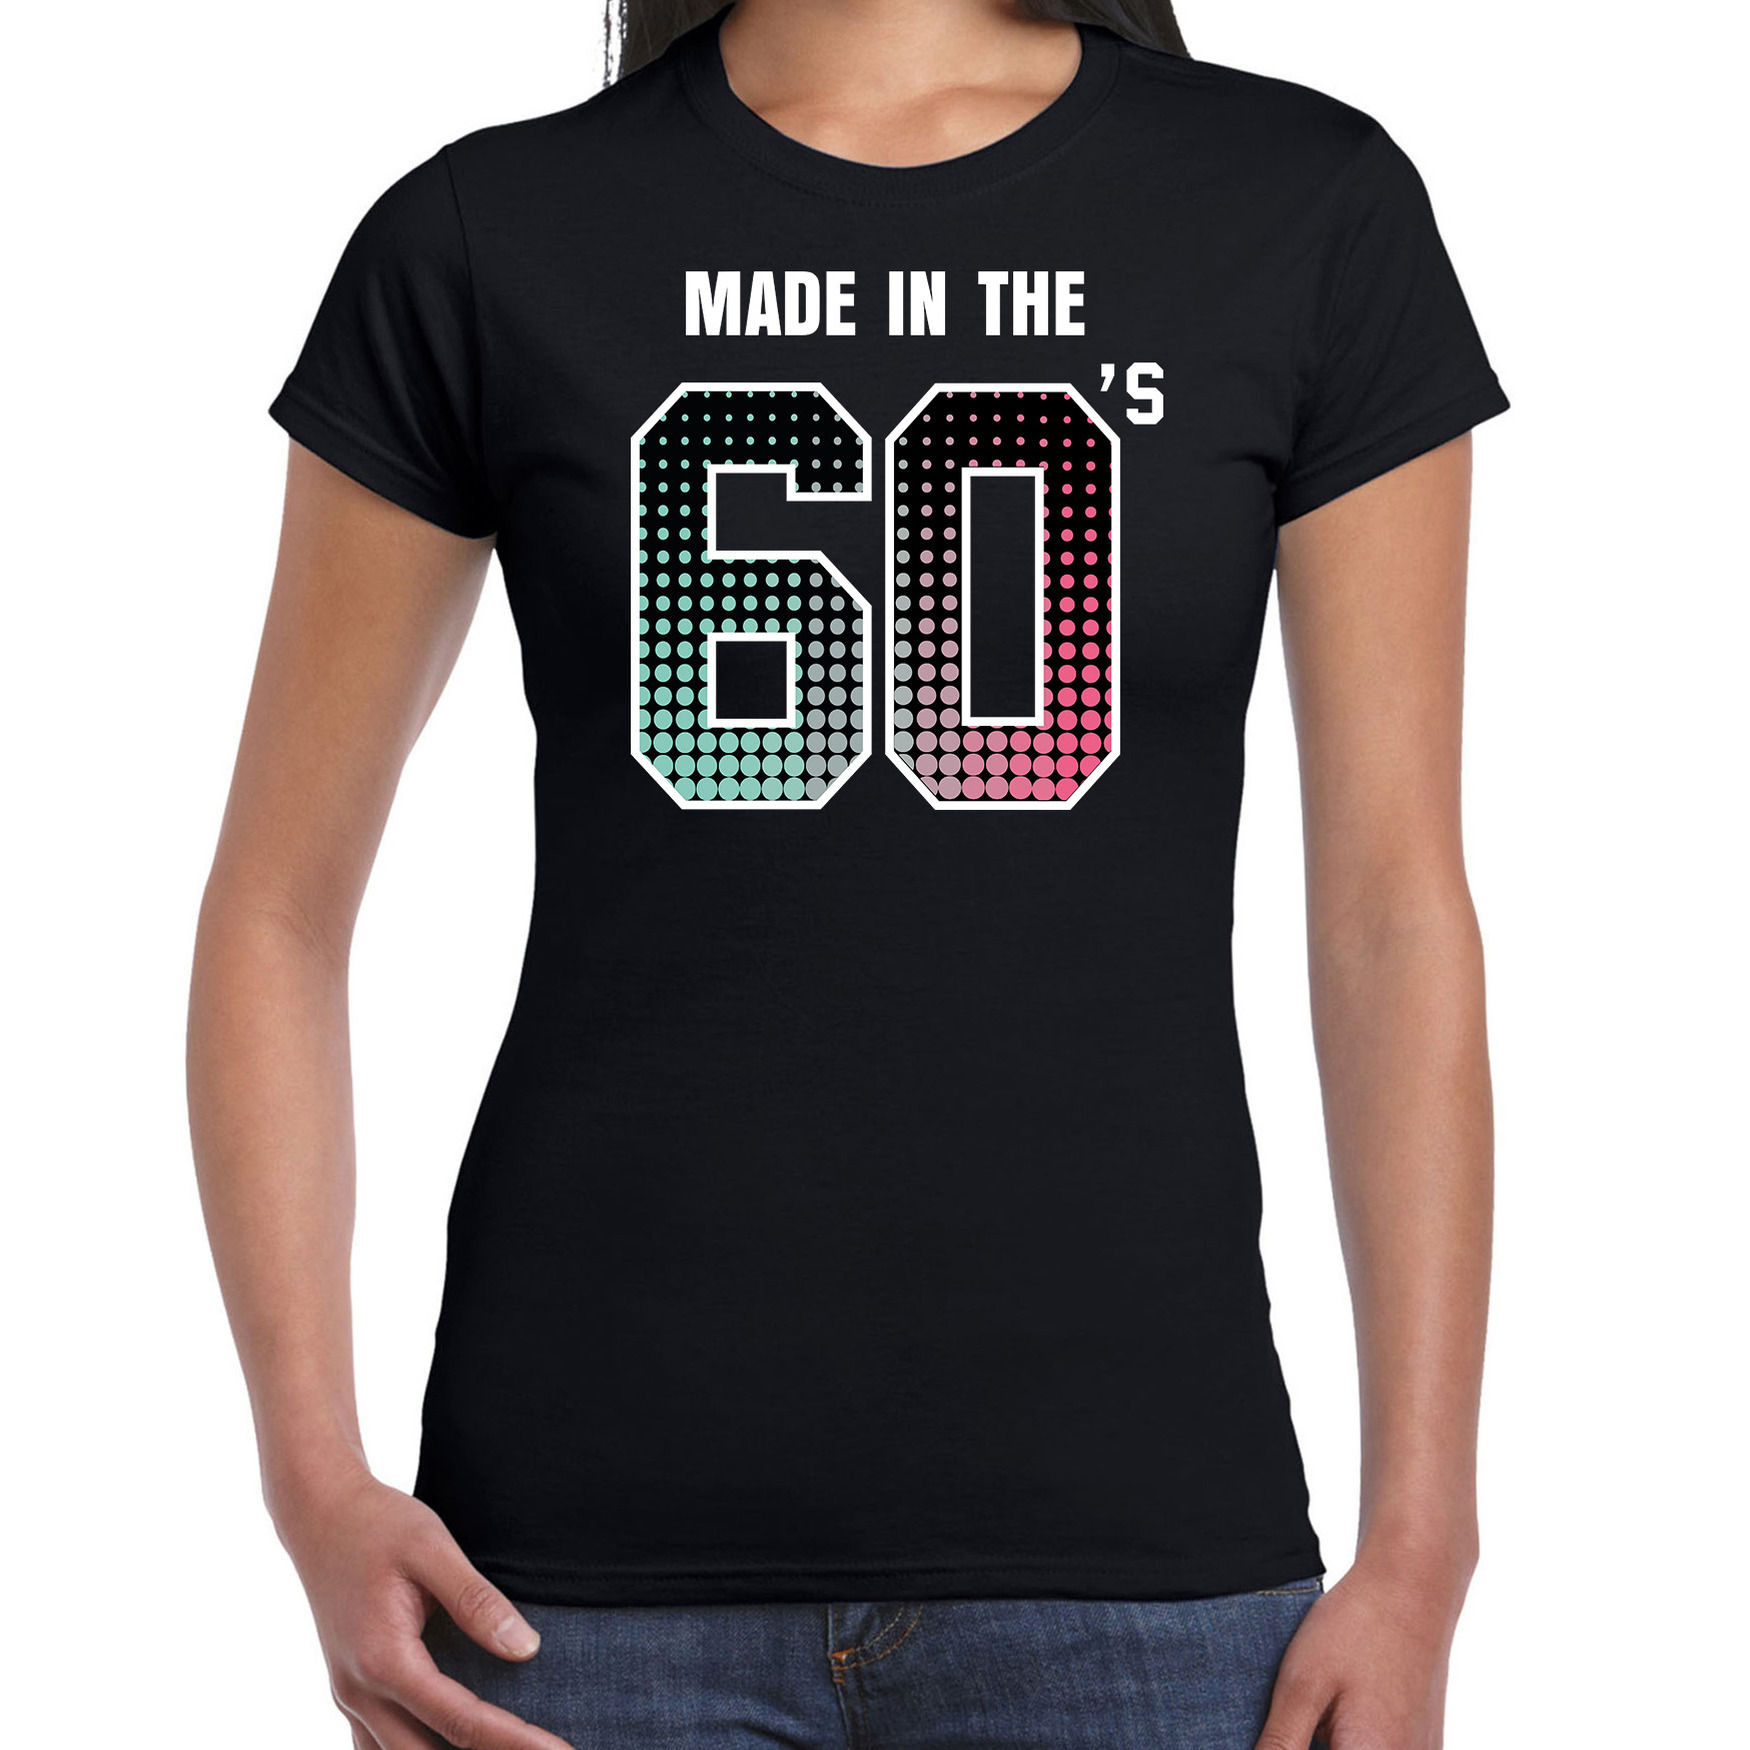 Sixties t-shirt - shirt made in the 60s - geboren in de jaren 60 zwart voor dames